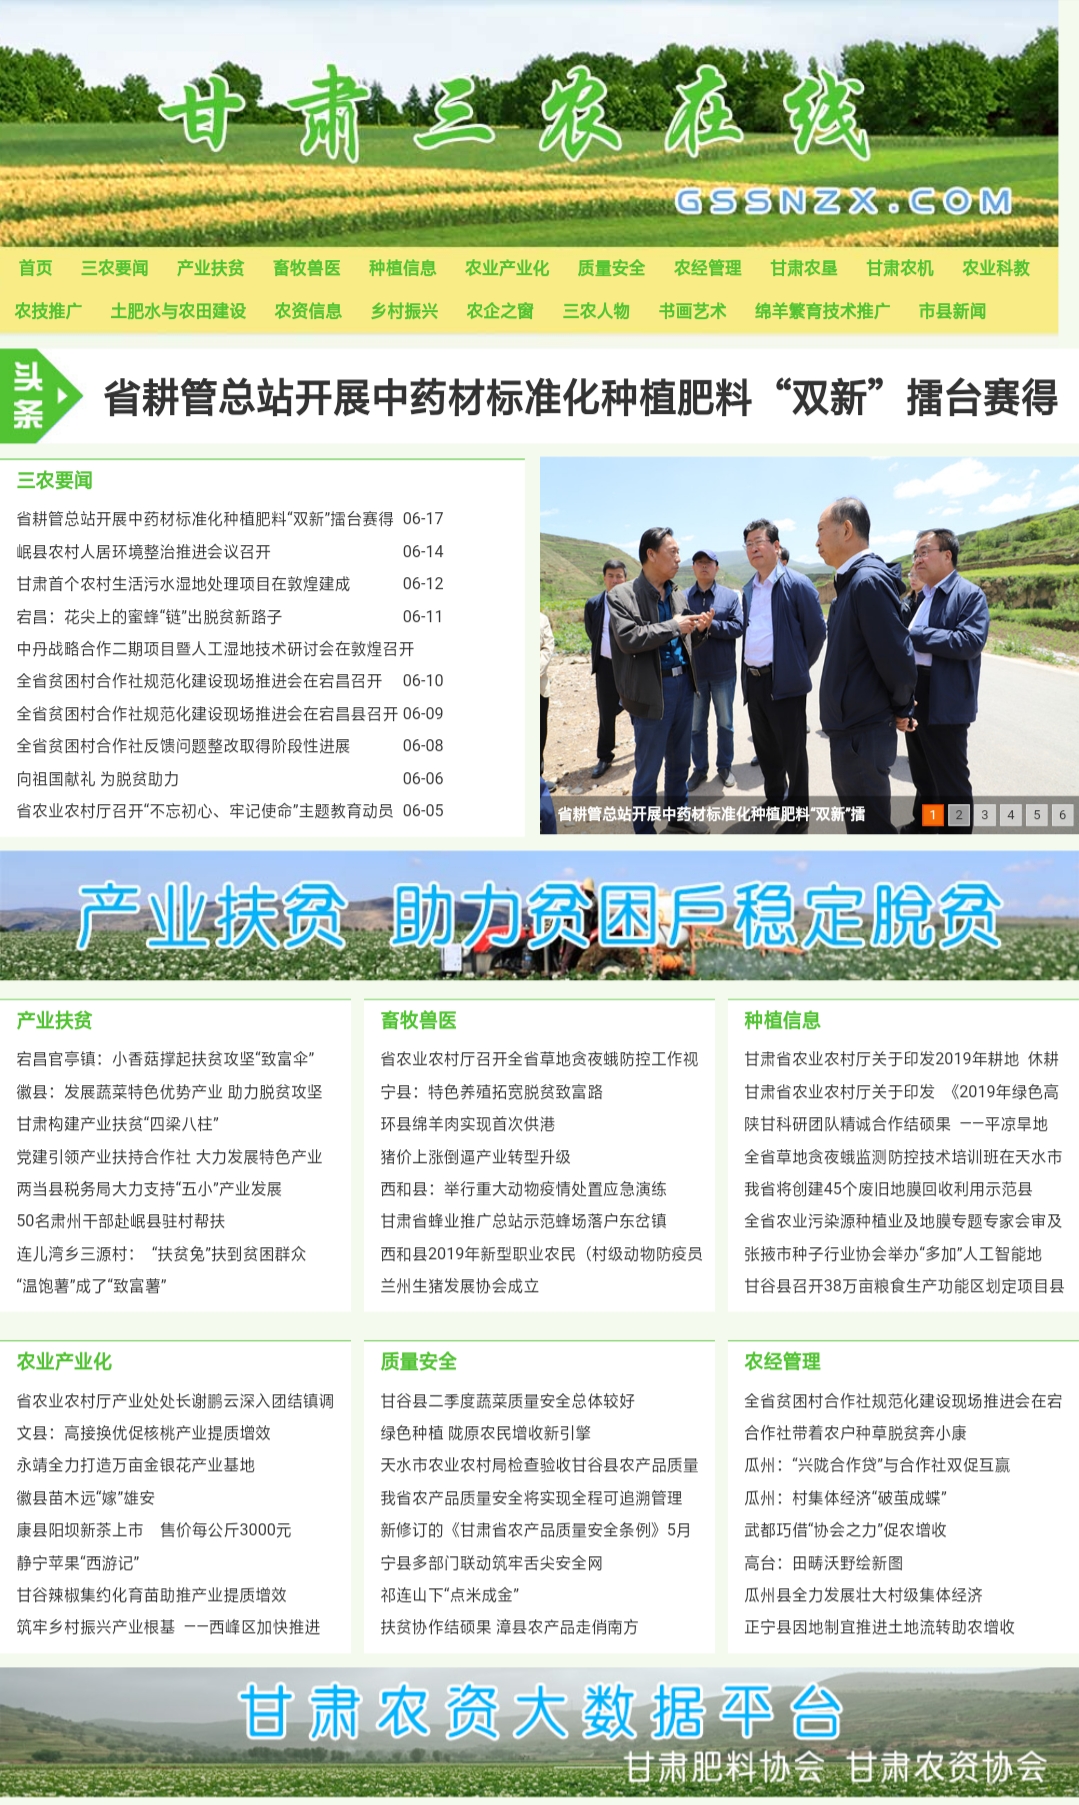 甘肃三农在线将打造全省农资大数据信息平台